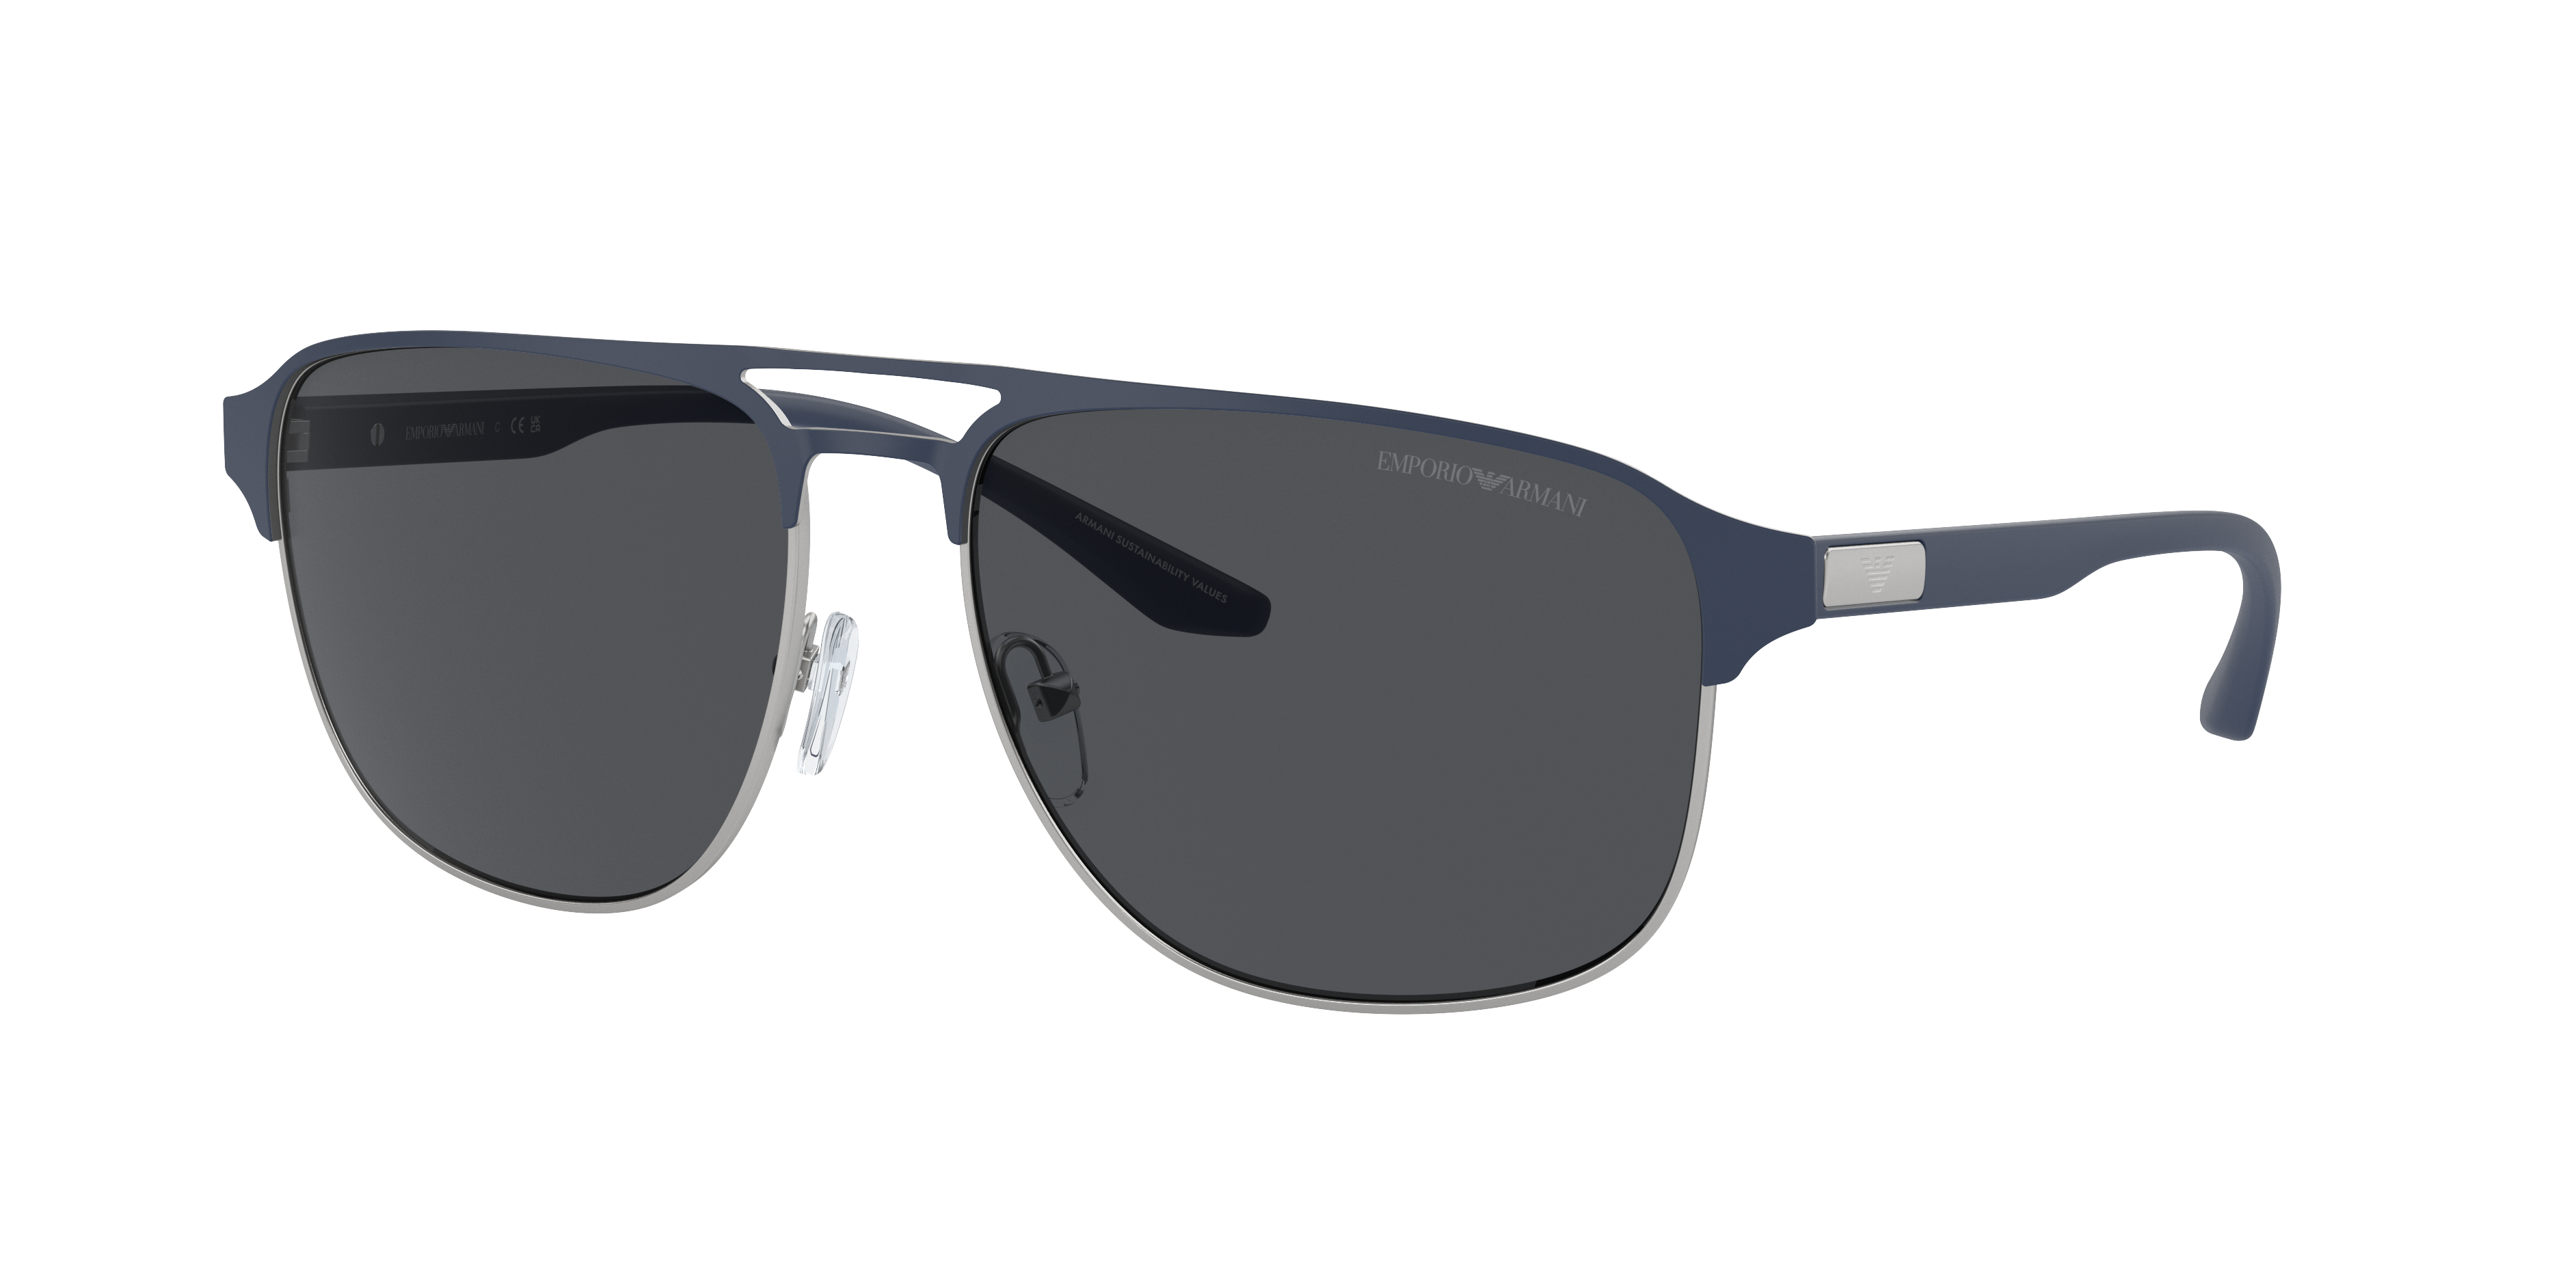 EMPORIO ARMANI EA2144 Matte Silver/Bluette - Man Sunglasses, Dark Grey Lens